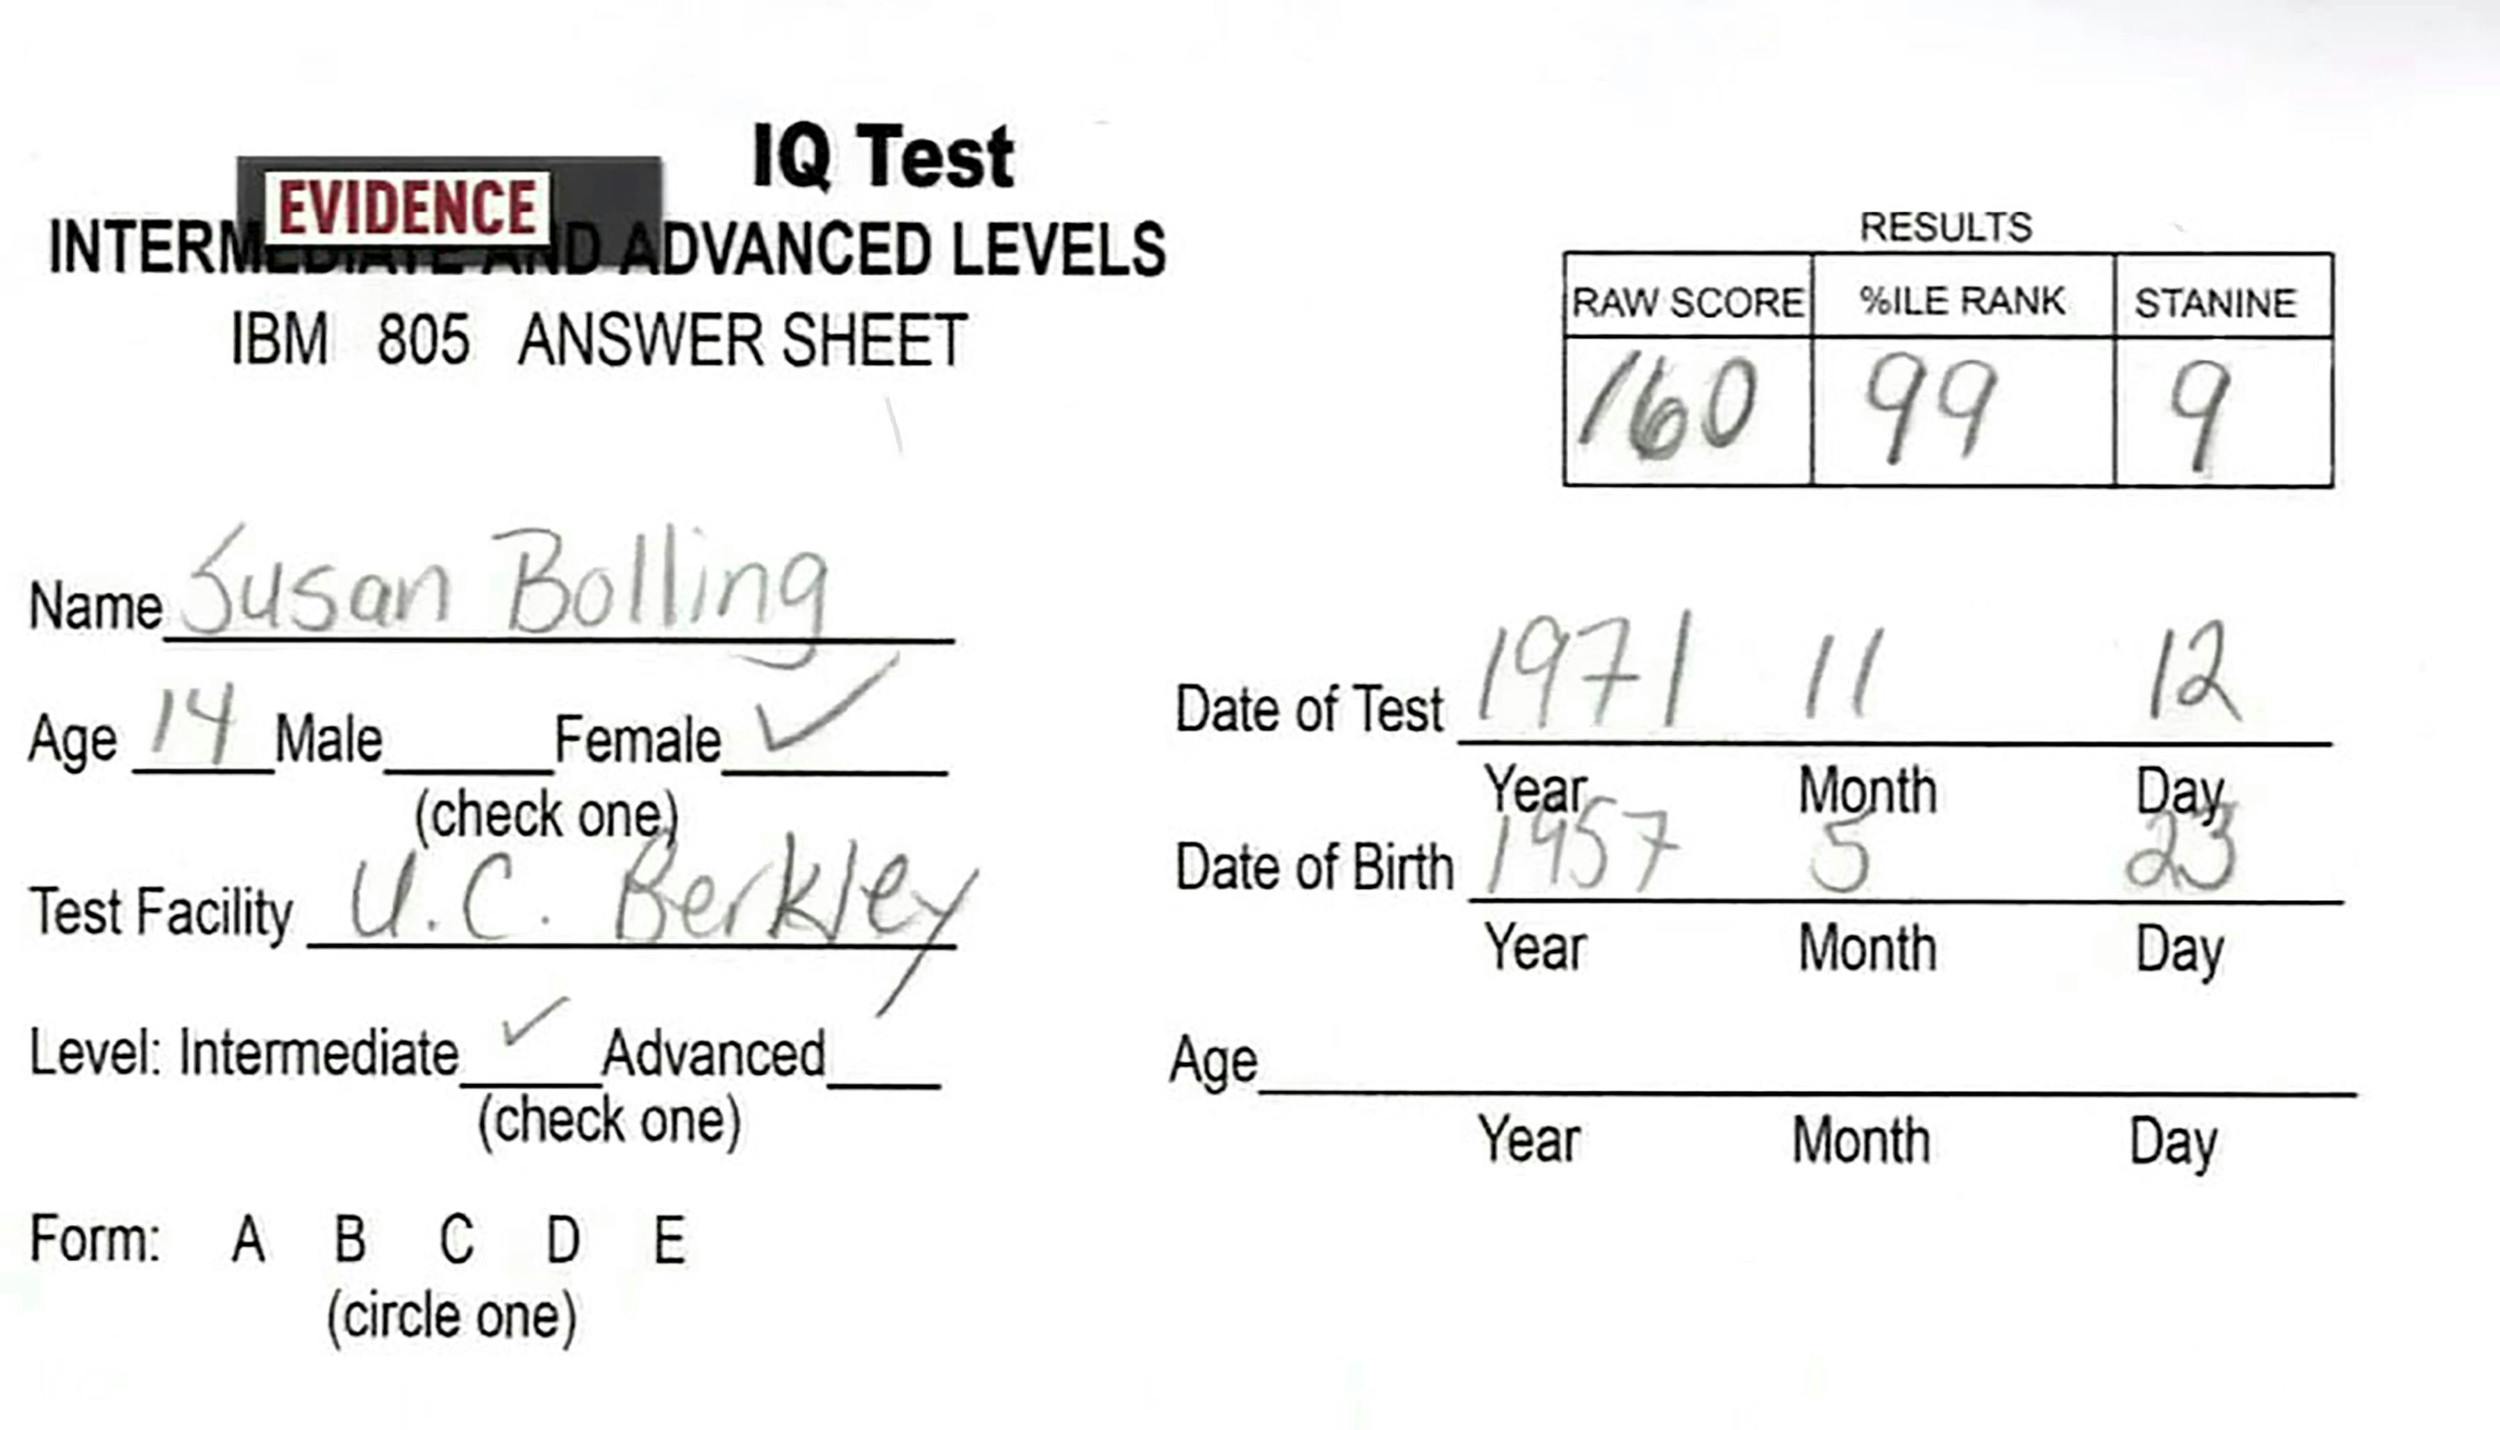 Allerede som barn var Susan Polk noget særligt, og en intelligenstest viste, at hun var usædvanlig begavet med en IQ på 160.